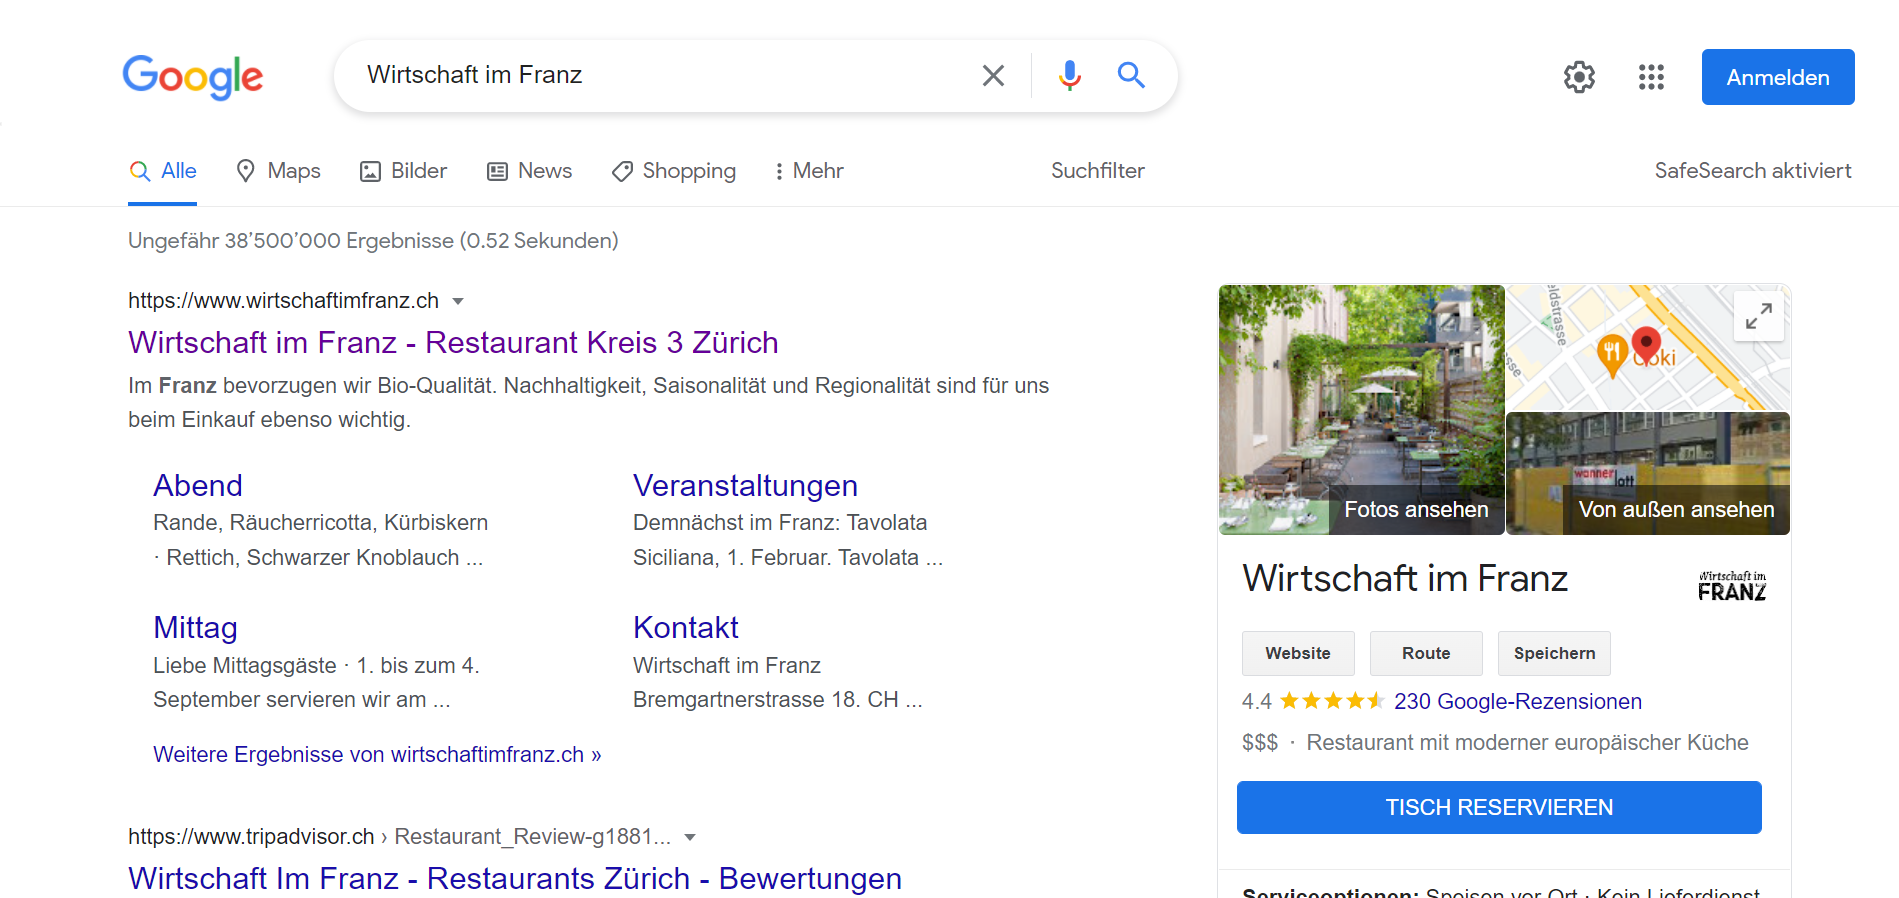 Reserve with Google - so sieht der blaue Button für Restaurants aus.